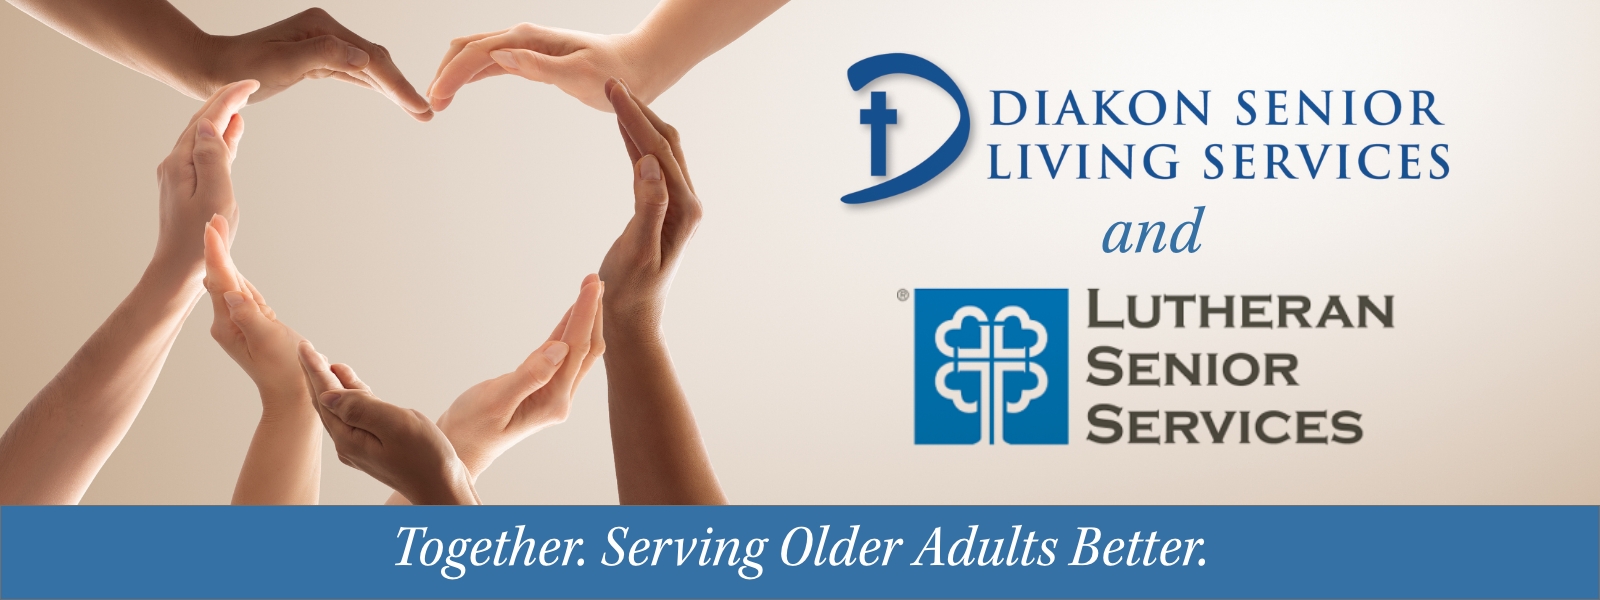 Diakon and Lutheran Senior Services Enter into Senior Living Agreement